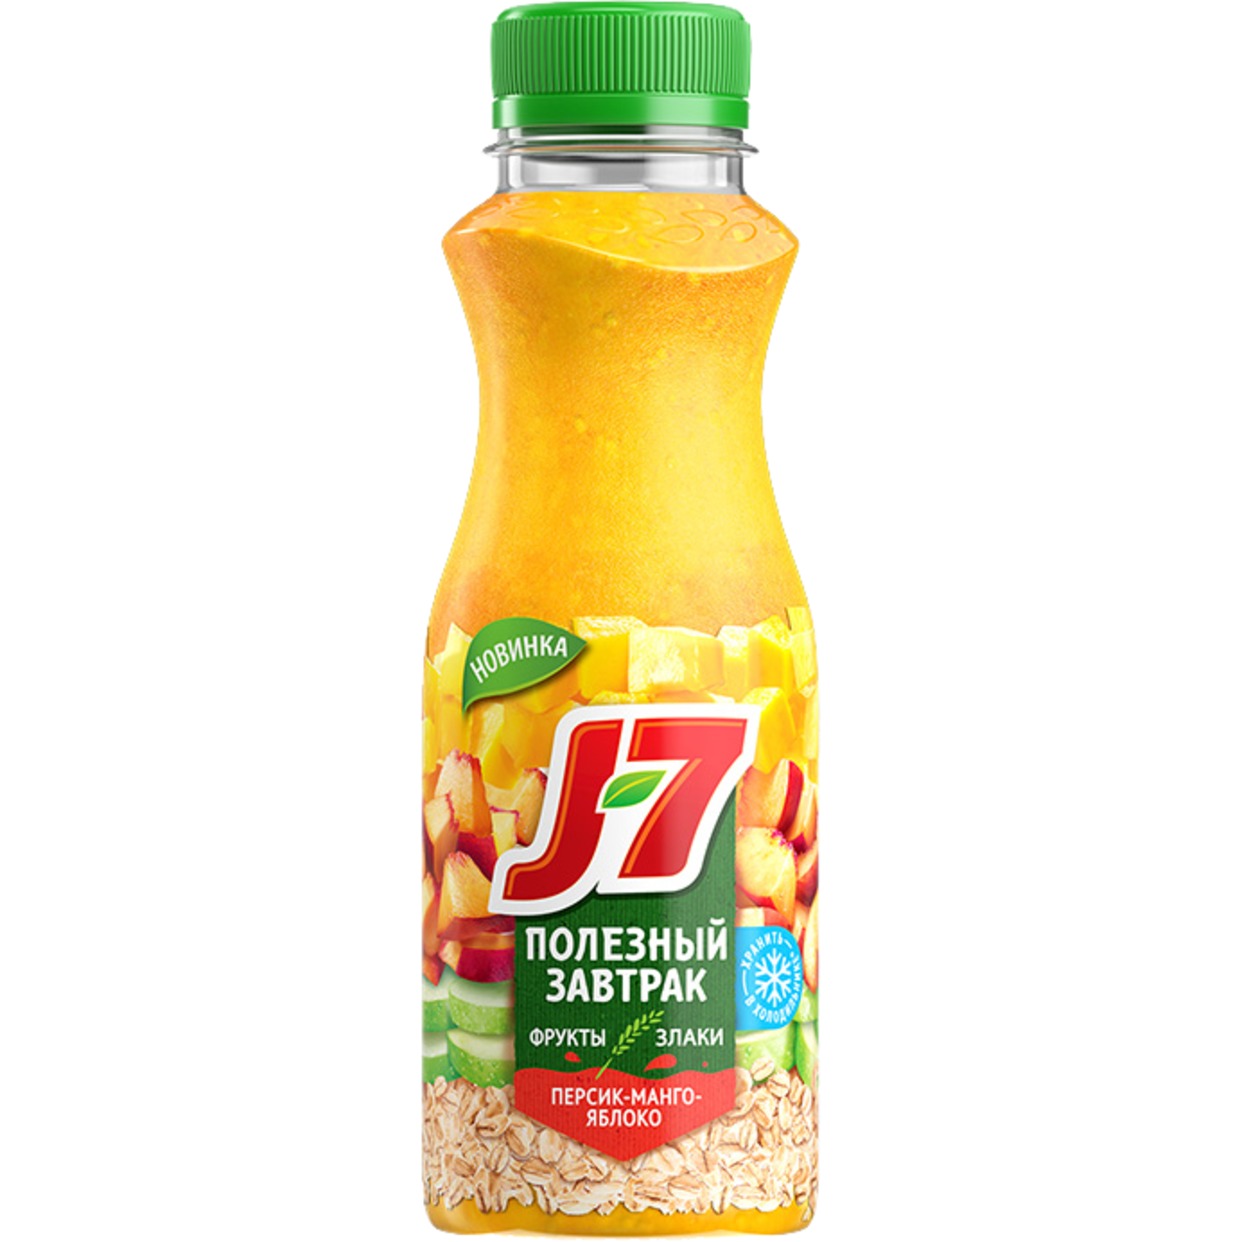 Напиток Полезный завтрак J7 персик-манго-яблоко 300 мл